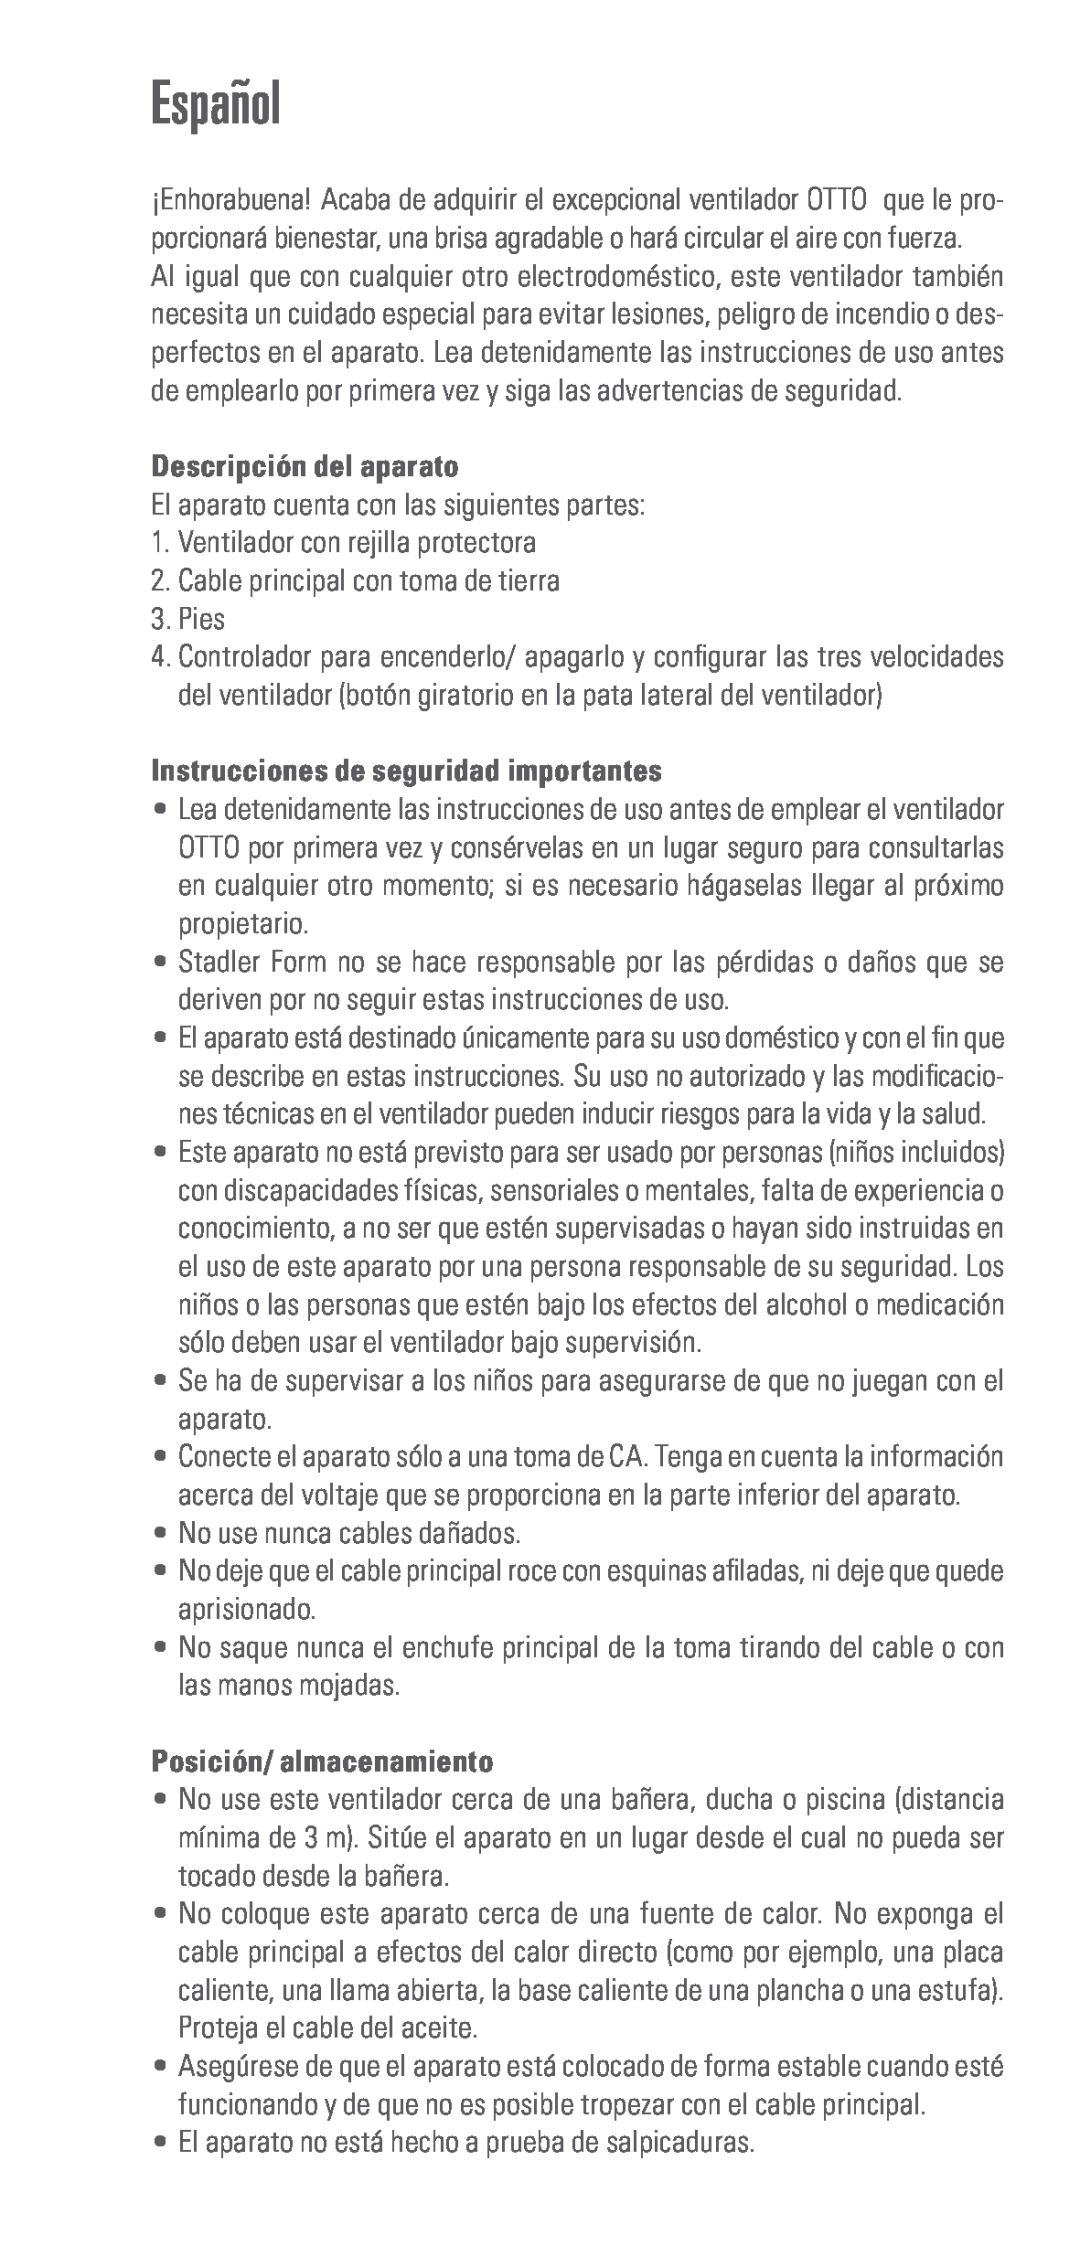 Swizz Style Otto manual Español, Descripción del aparato, Instrucciones de seguridad importantes, Posición/ almacenamiento 